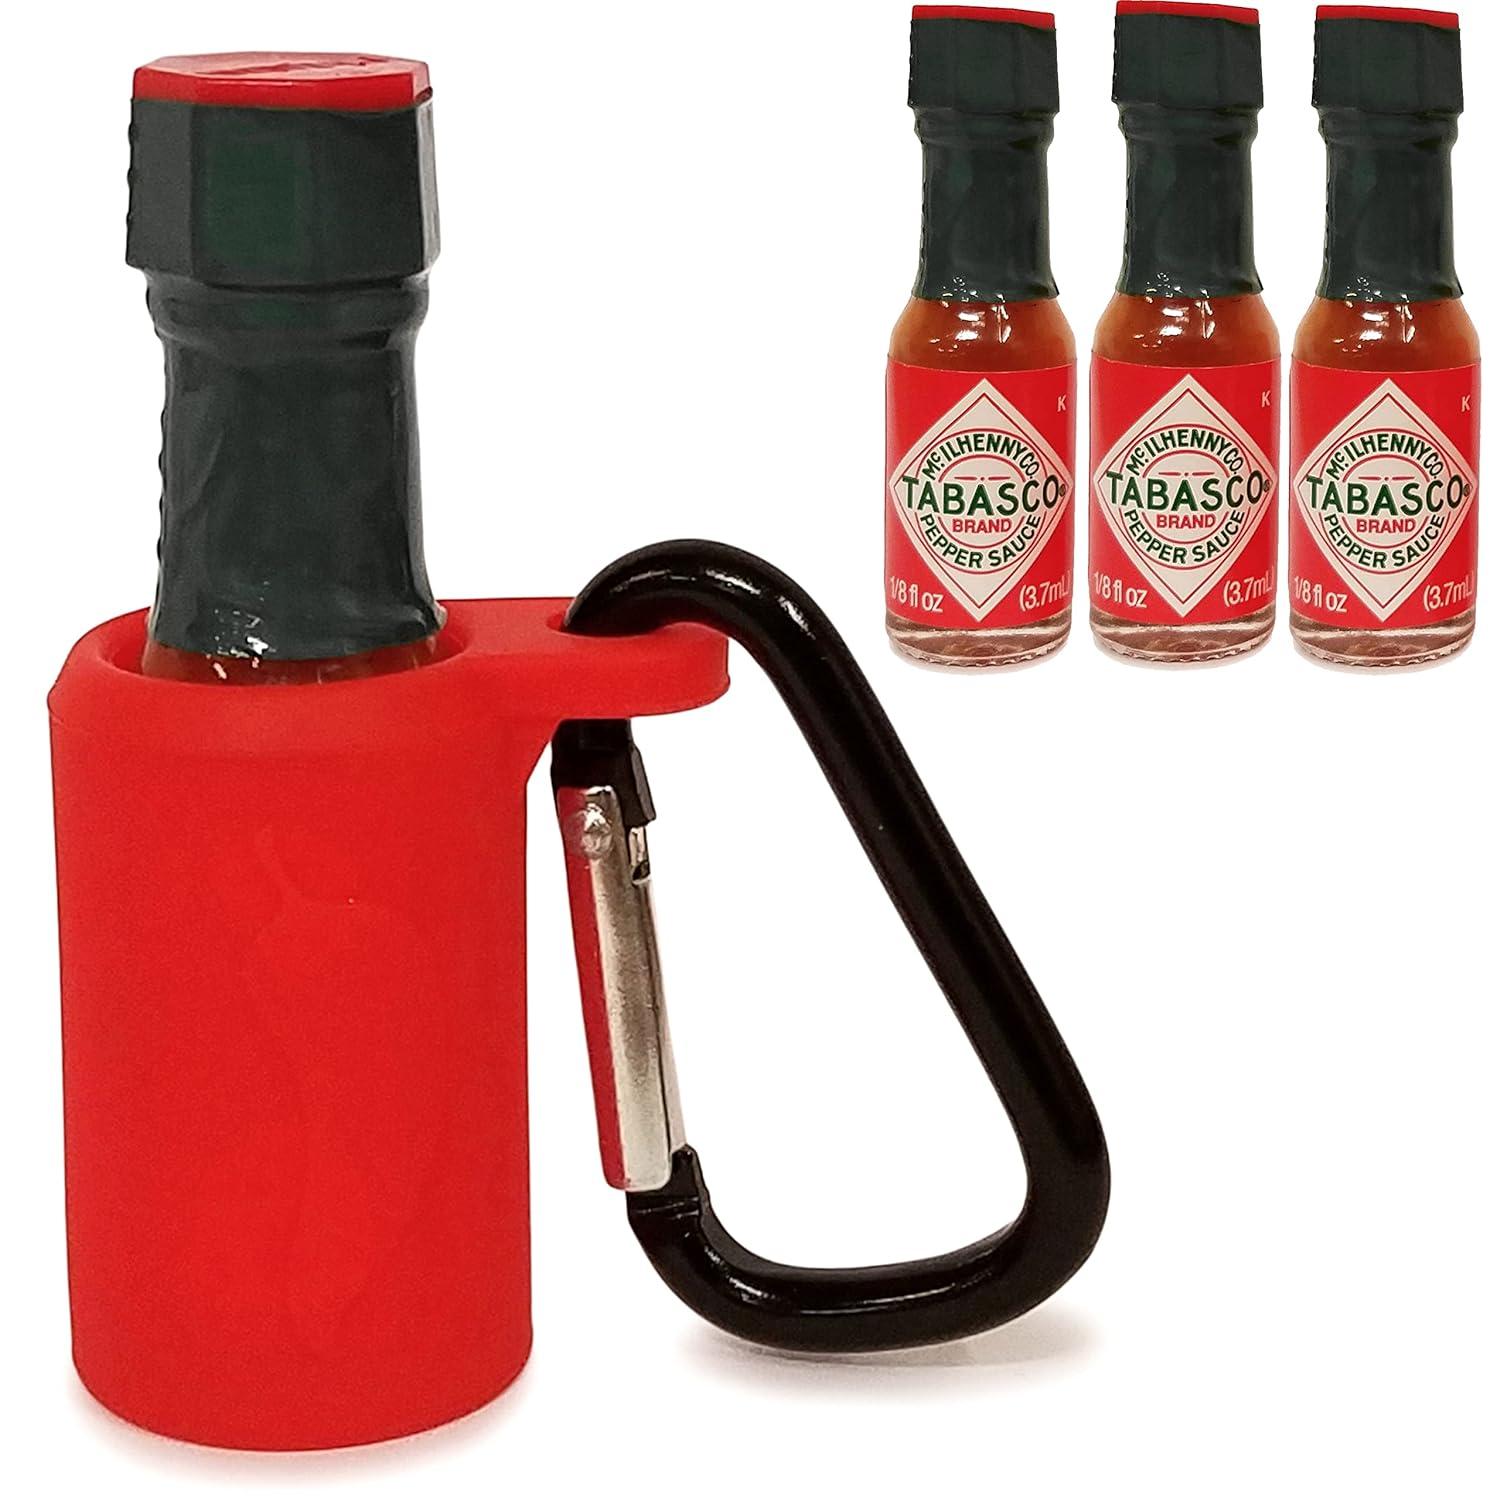 En tre pakke tabasco sauce med en nøglering til at holde flasken